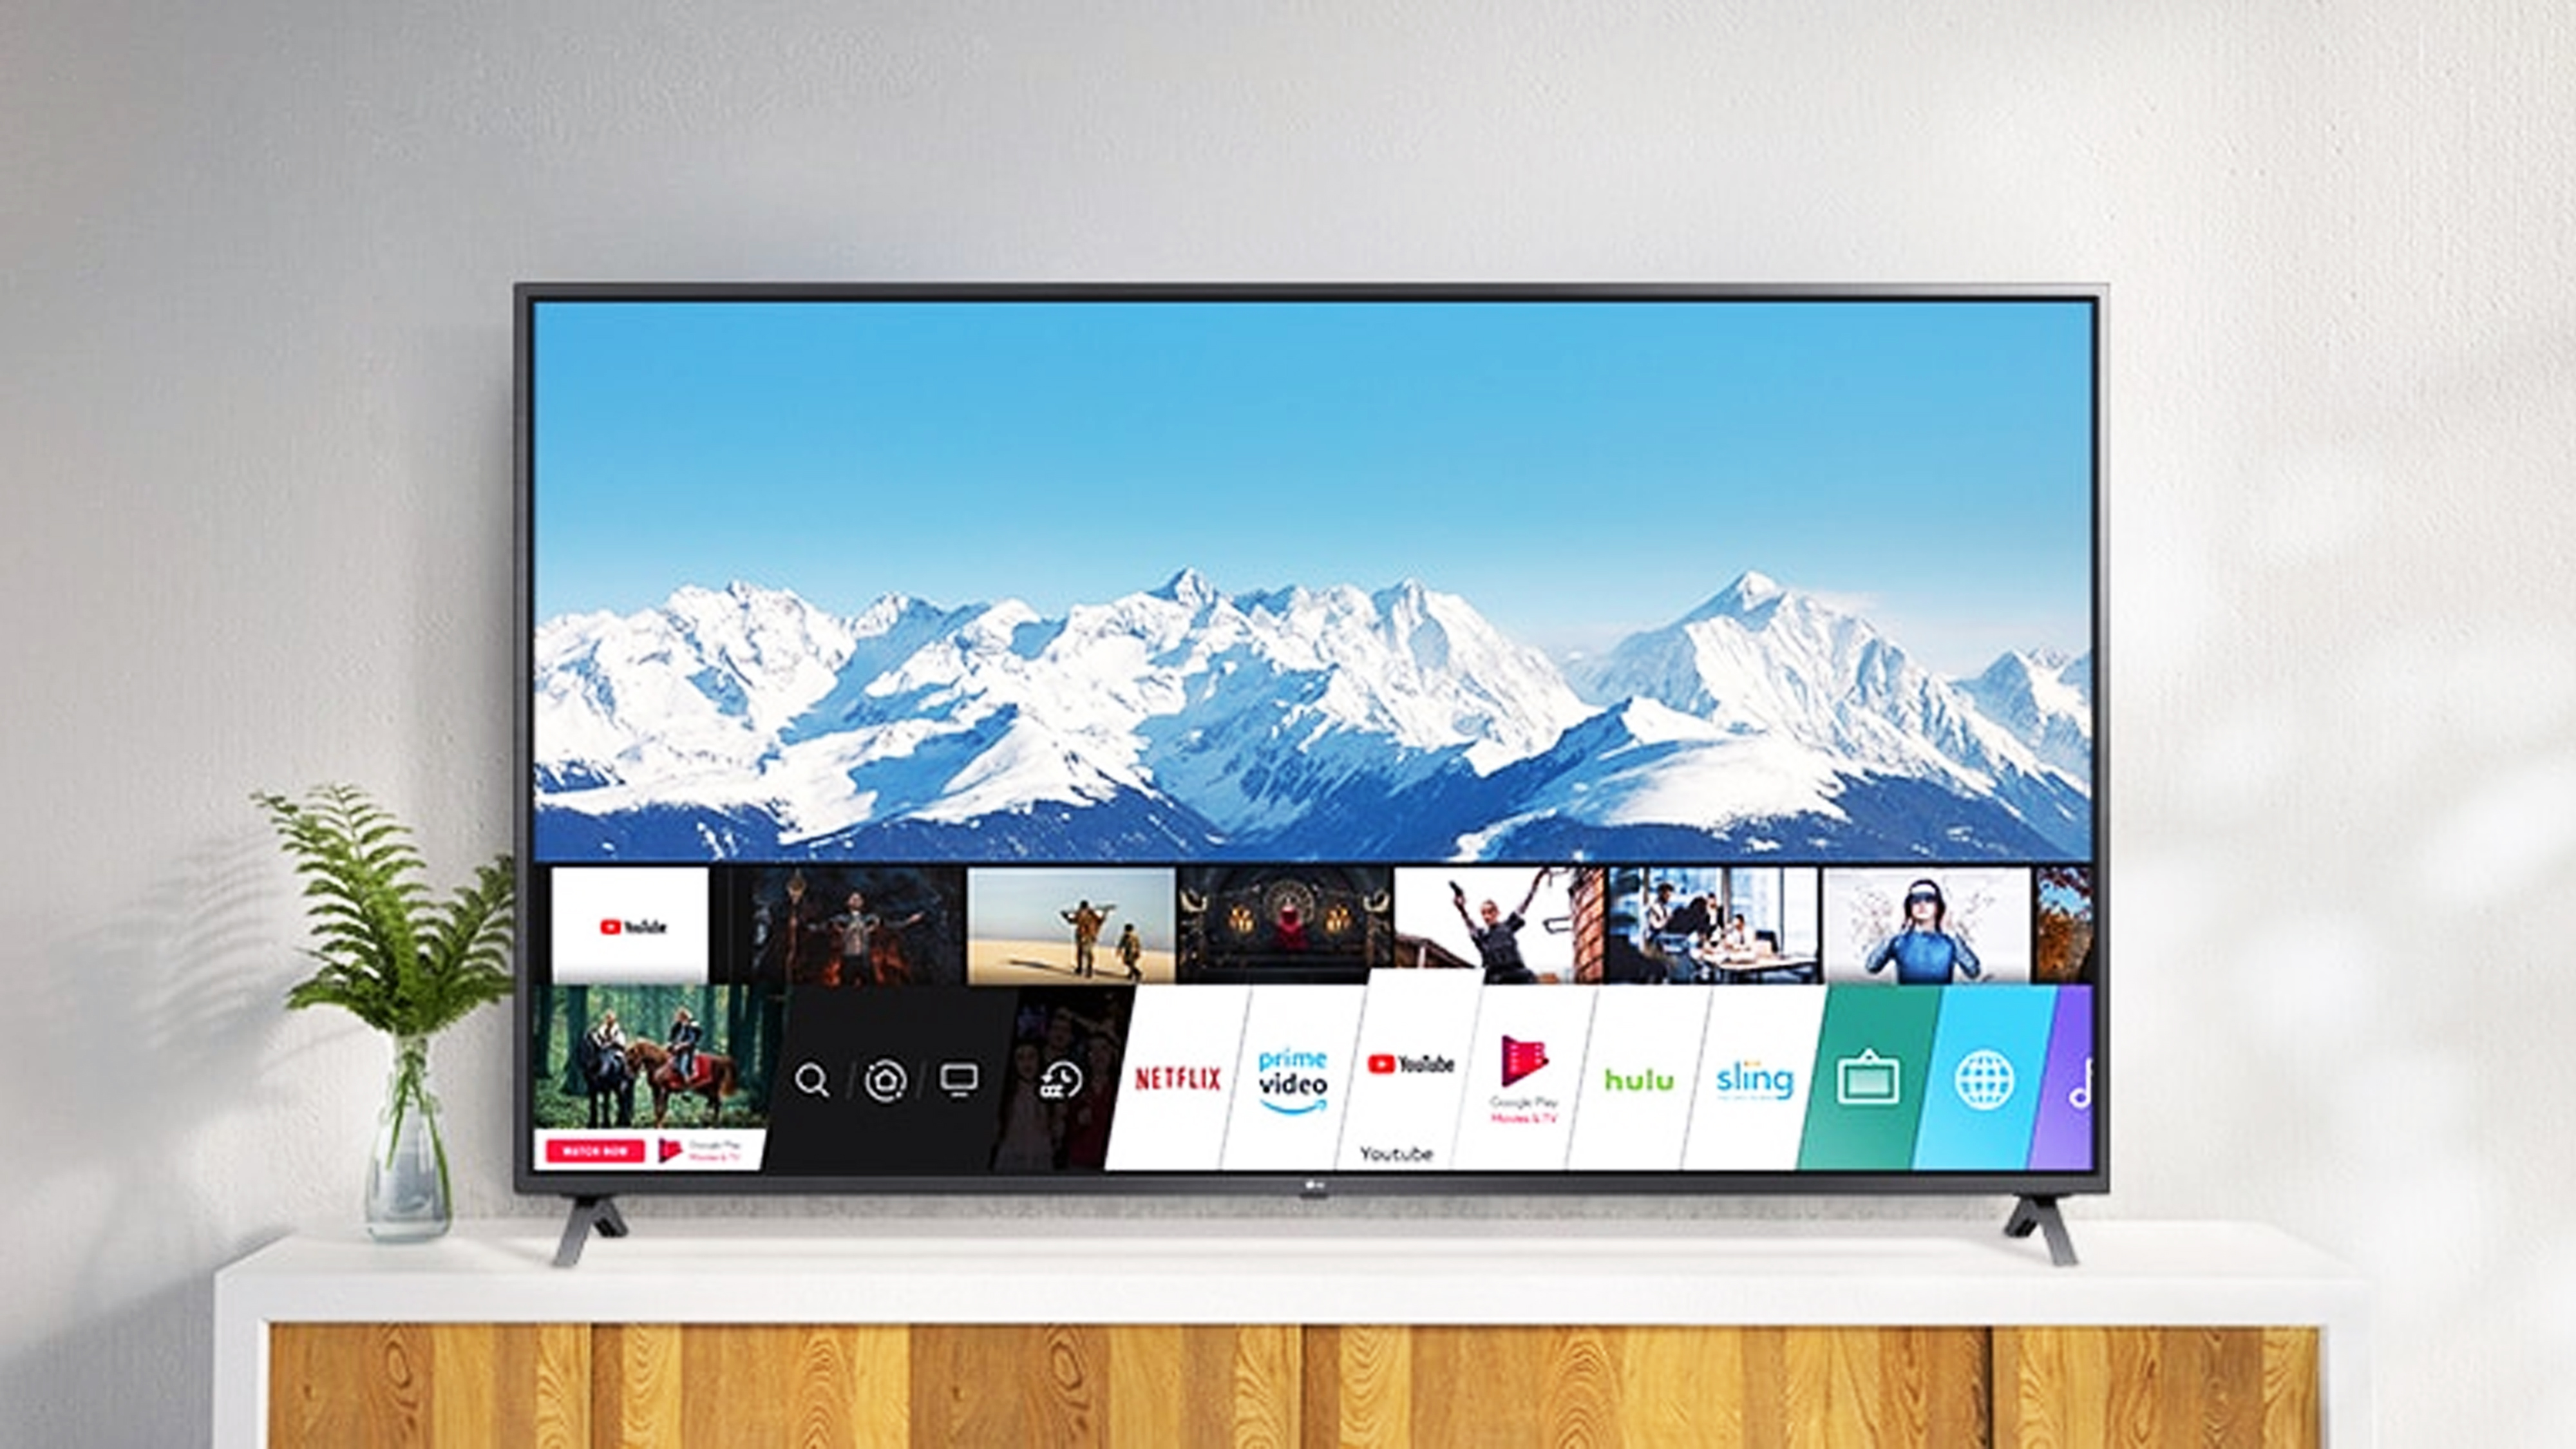 Comprar un televisor LG en 2021, ¿cuáles son los mejores modelos? |  Computer Hoy